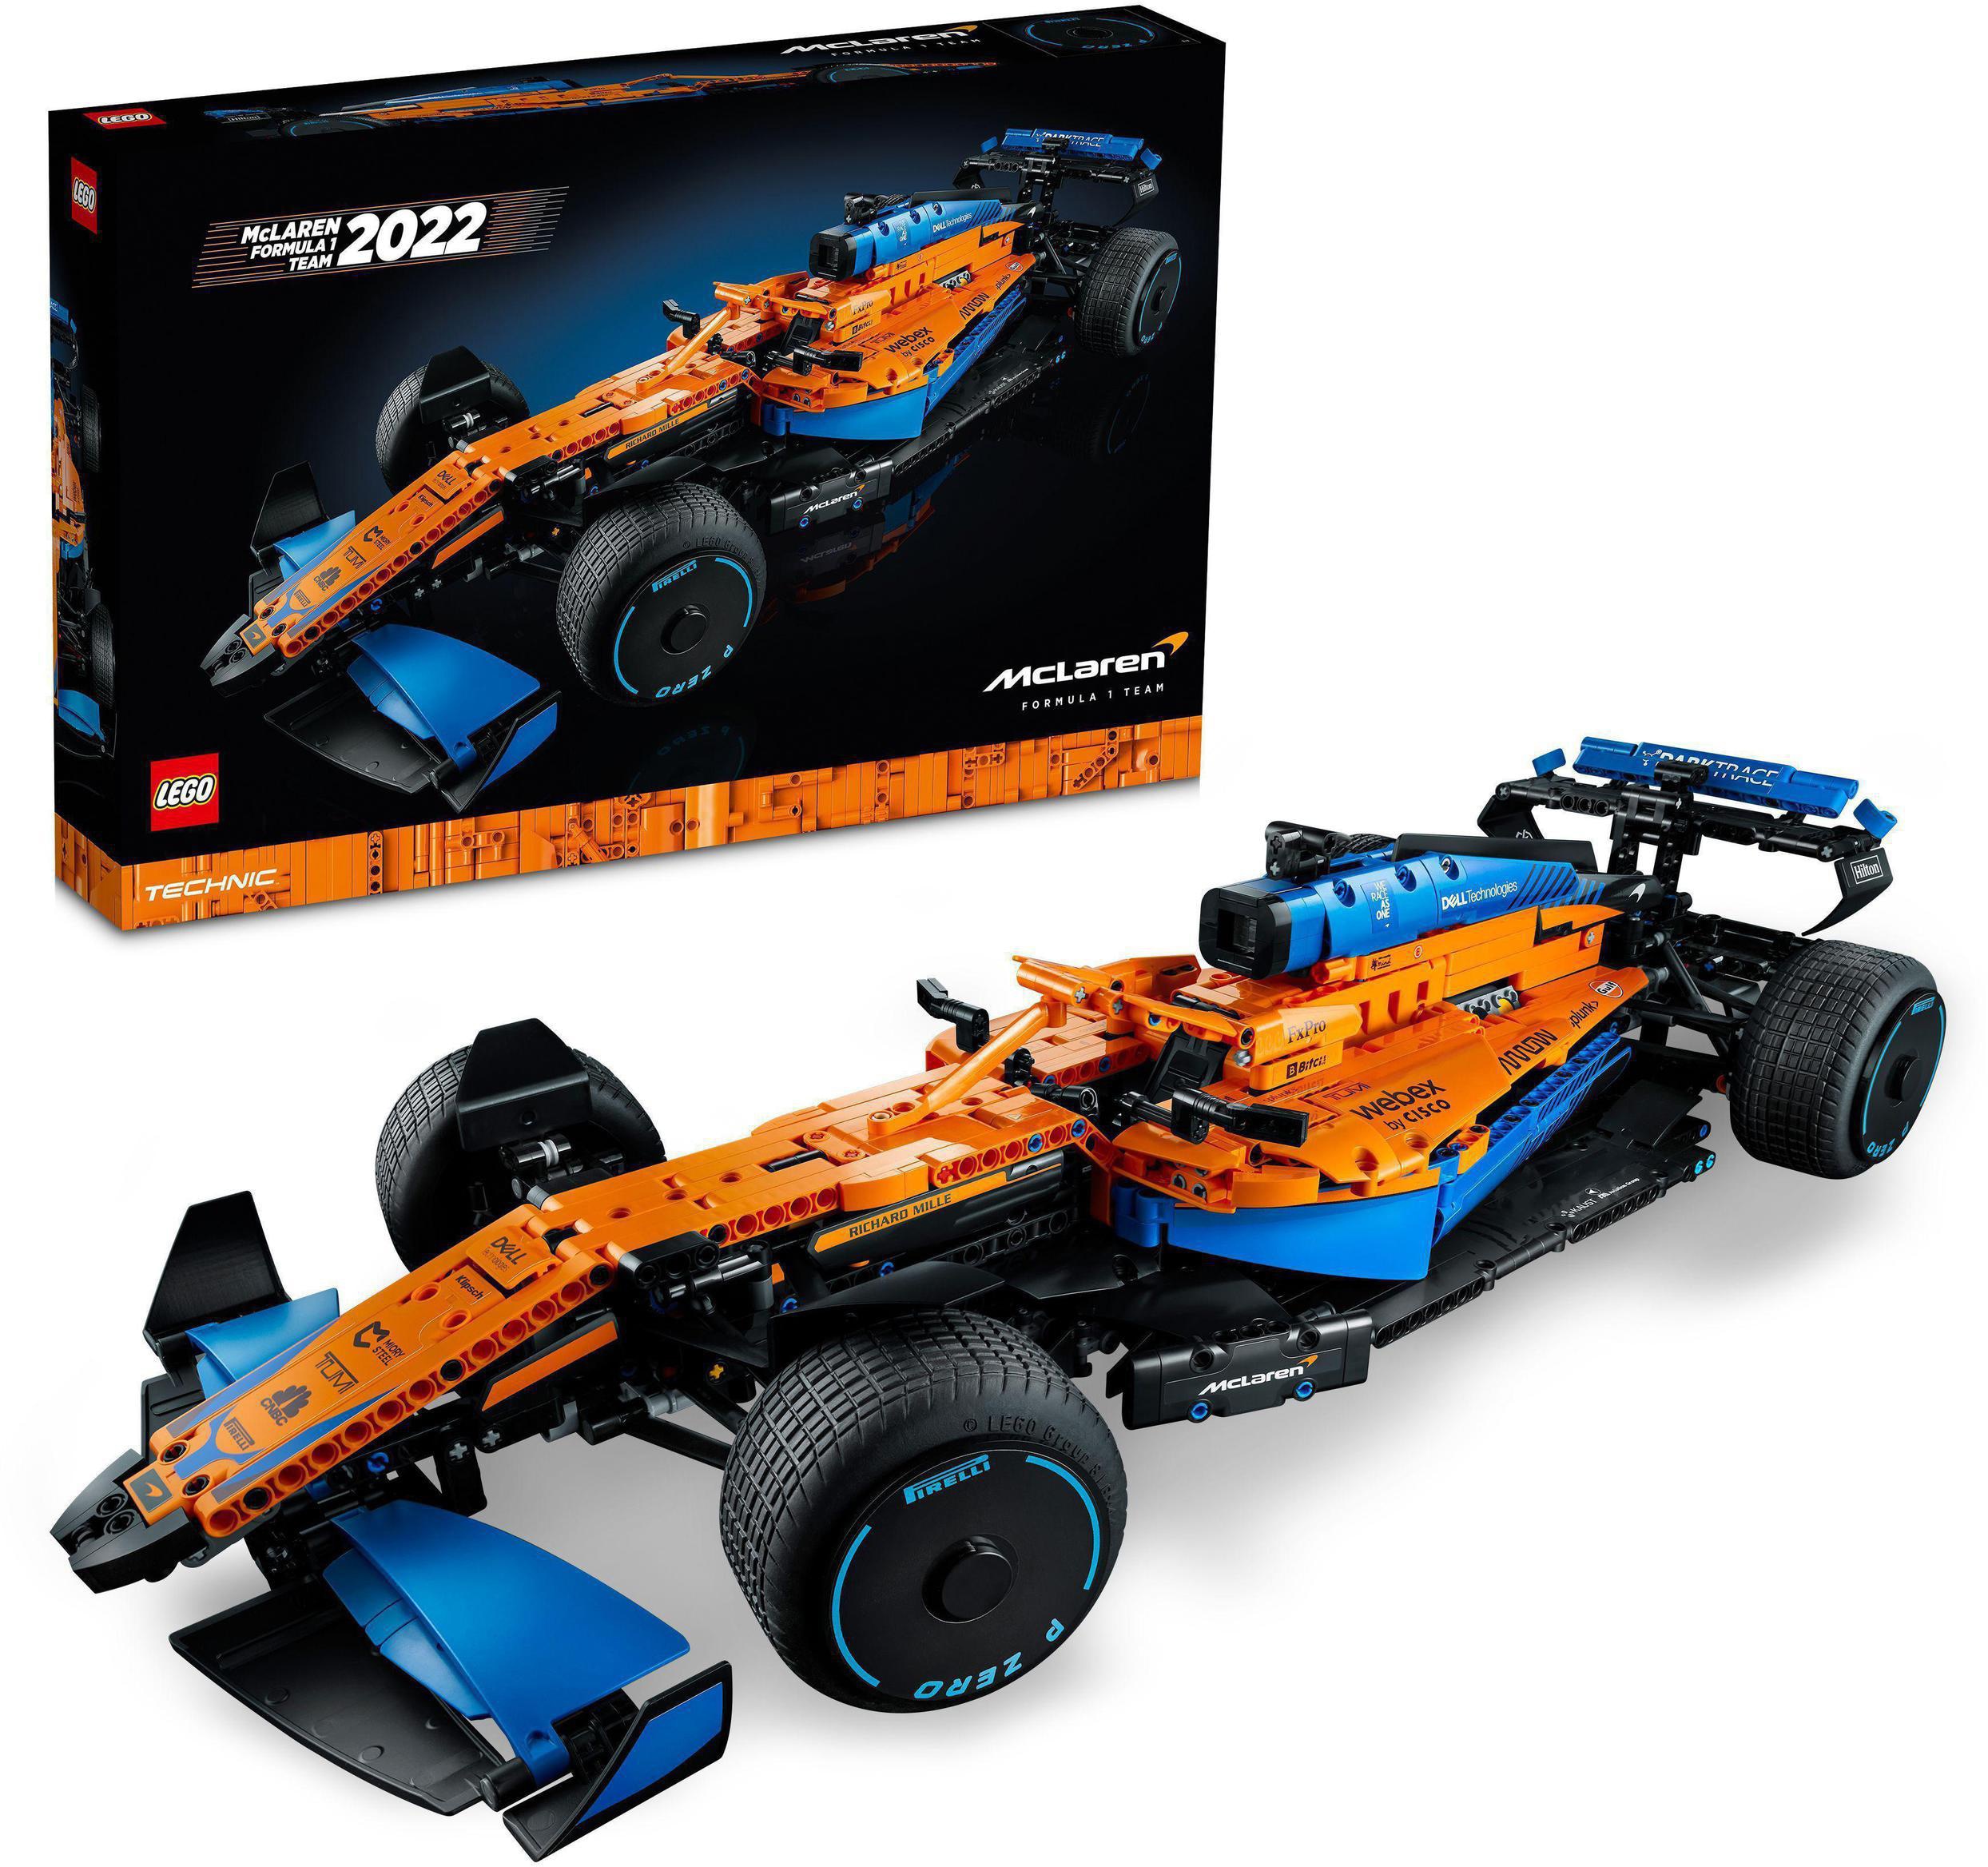 LEGO Konstruktionsspielsteine McLaren Formel 1™ Rennwagen (42141), LEGO Technic, (1432 St.), Made in Europe